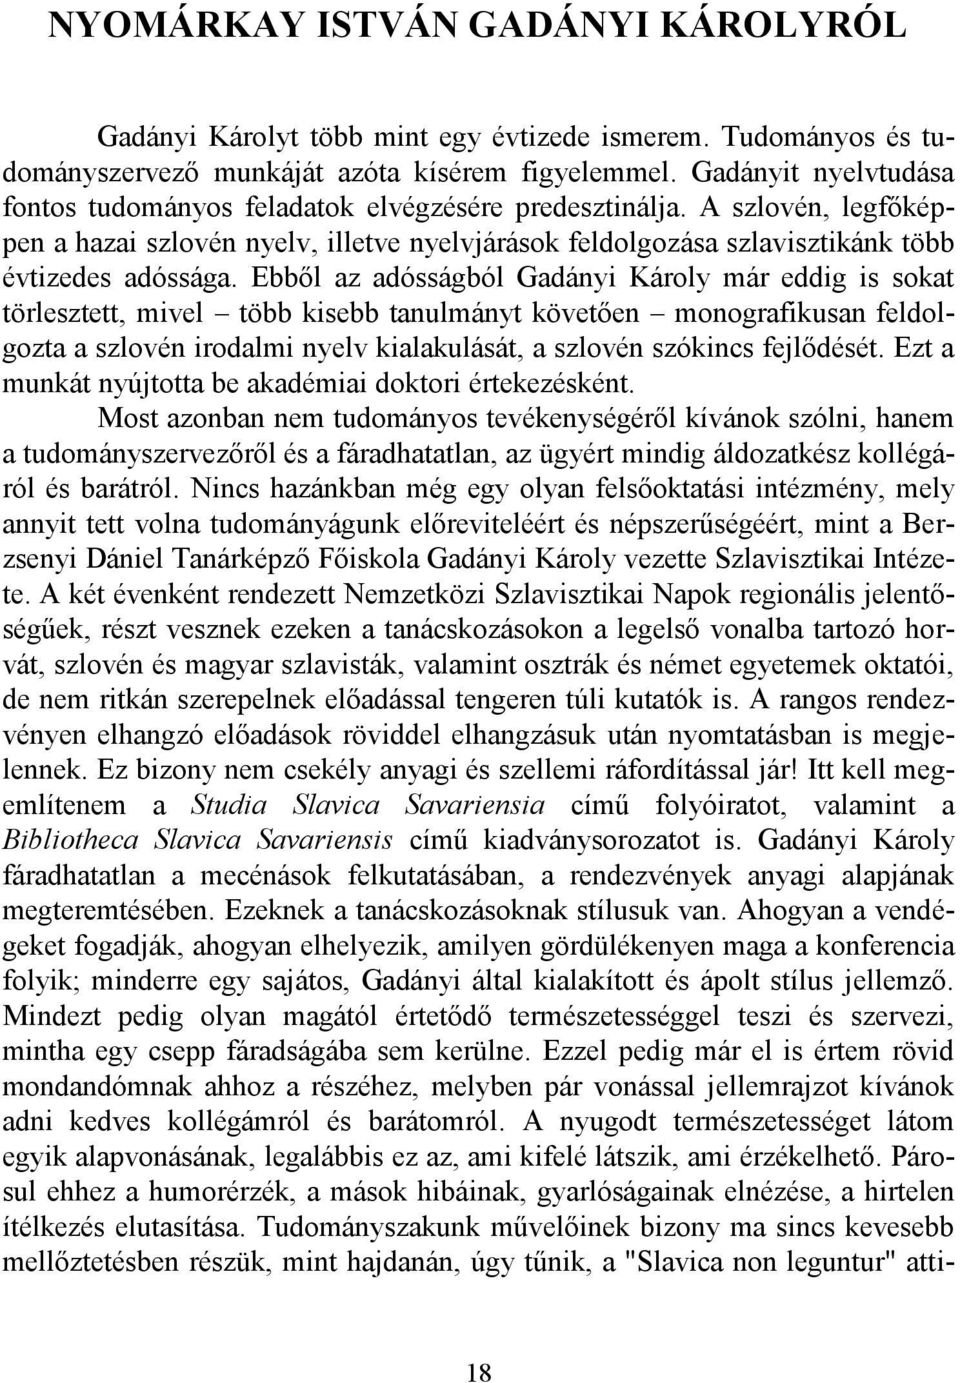 Ebből az adósságból Gadányi Károly már eddig is sokat törlesztett, mivel több kisebb tanulmányt követően monografikusan feldolgozta a szlovén irodalmi nyelv kialakulását, a szlovén szókincs